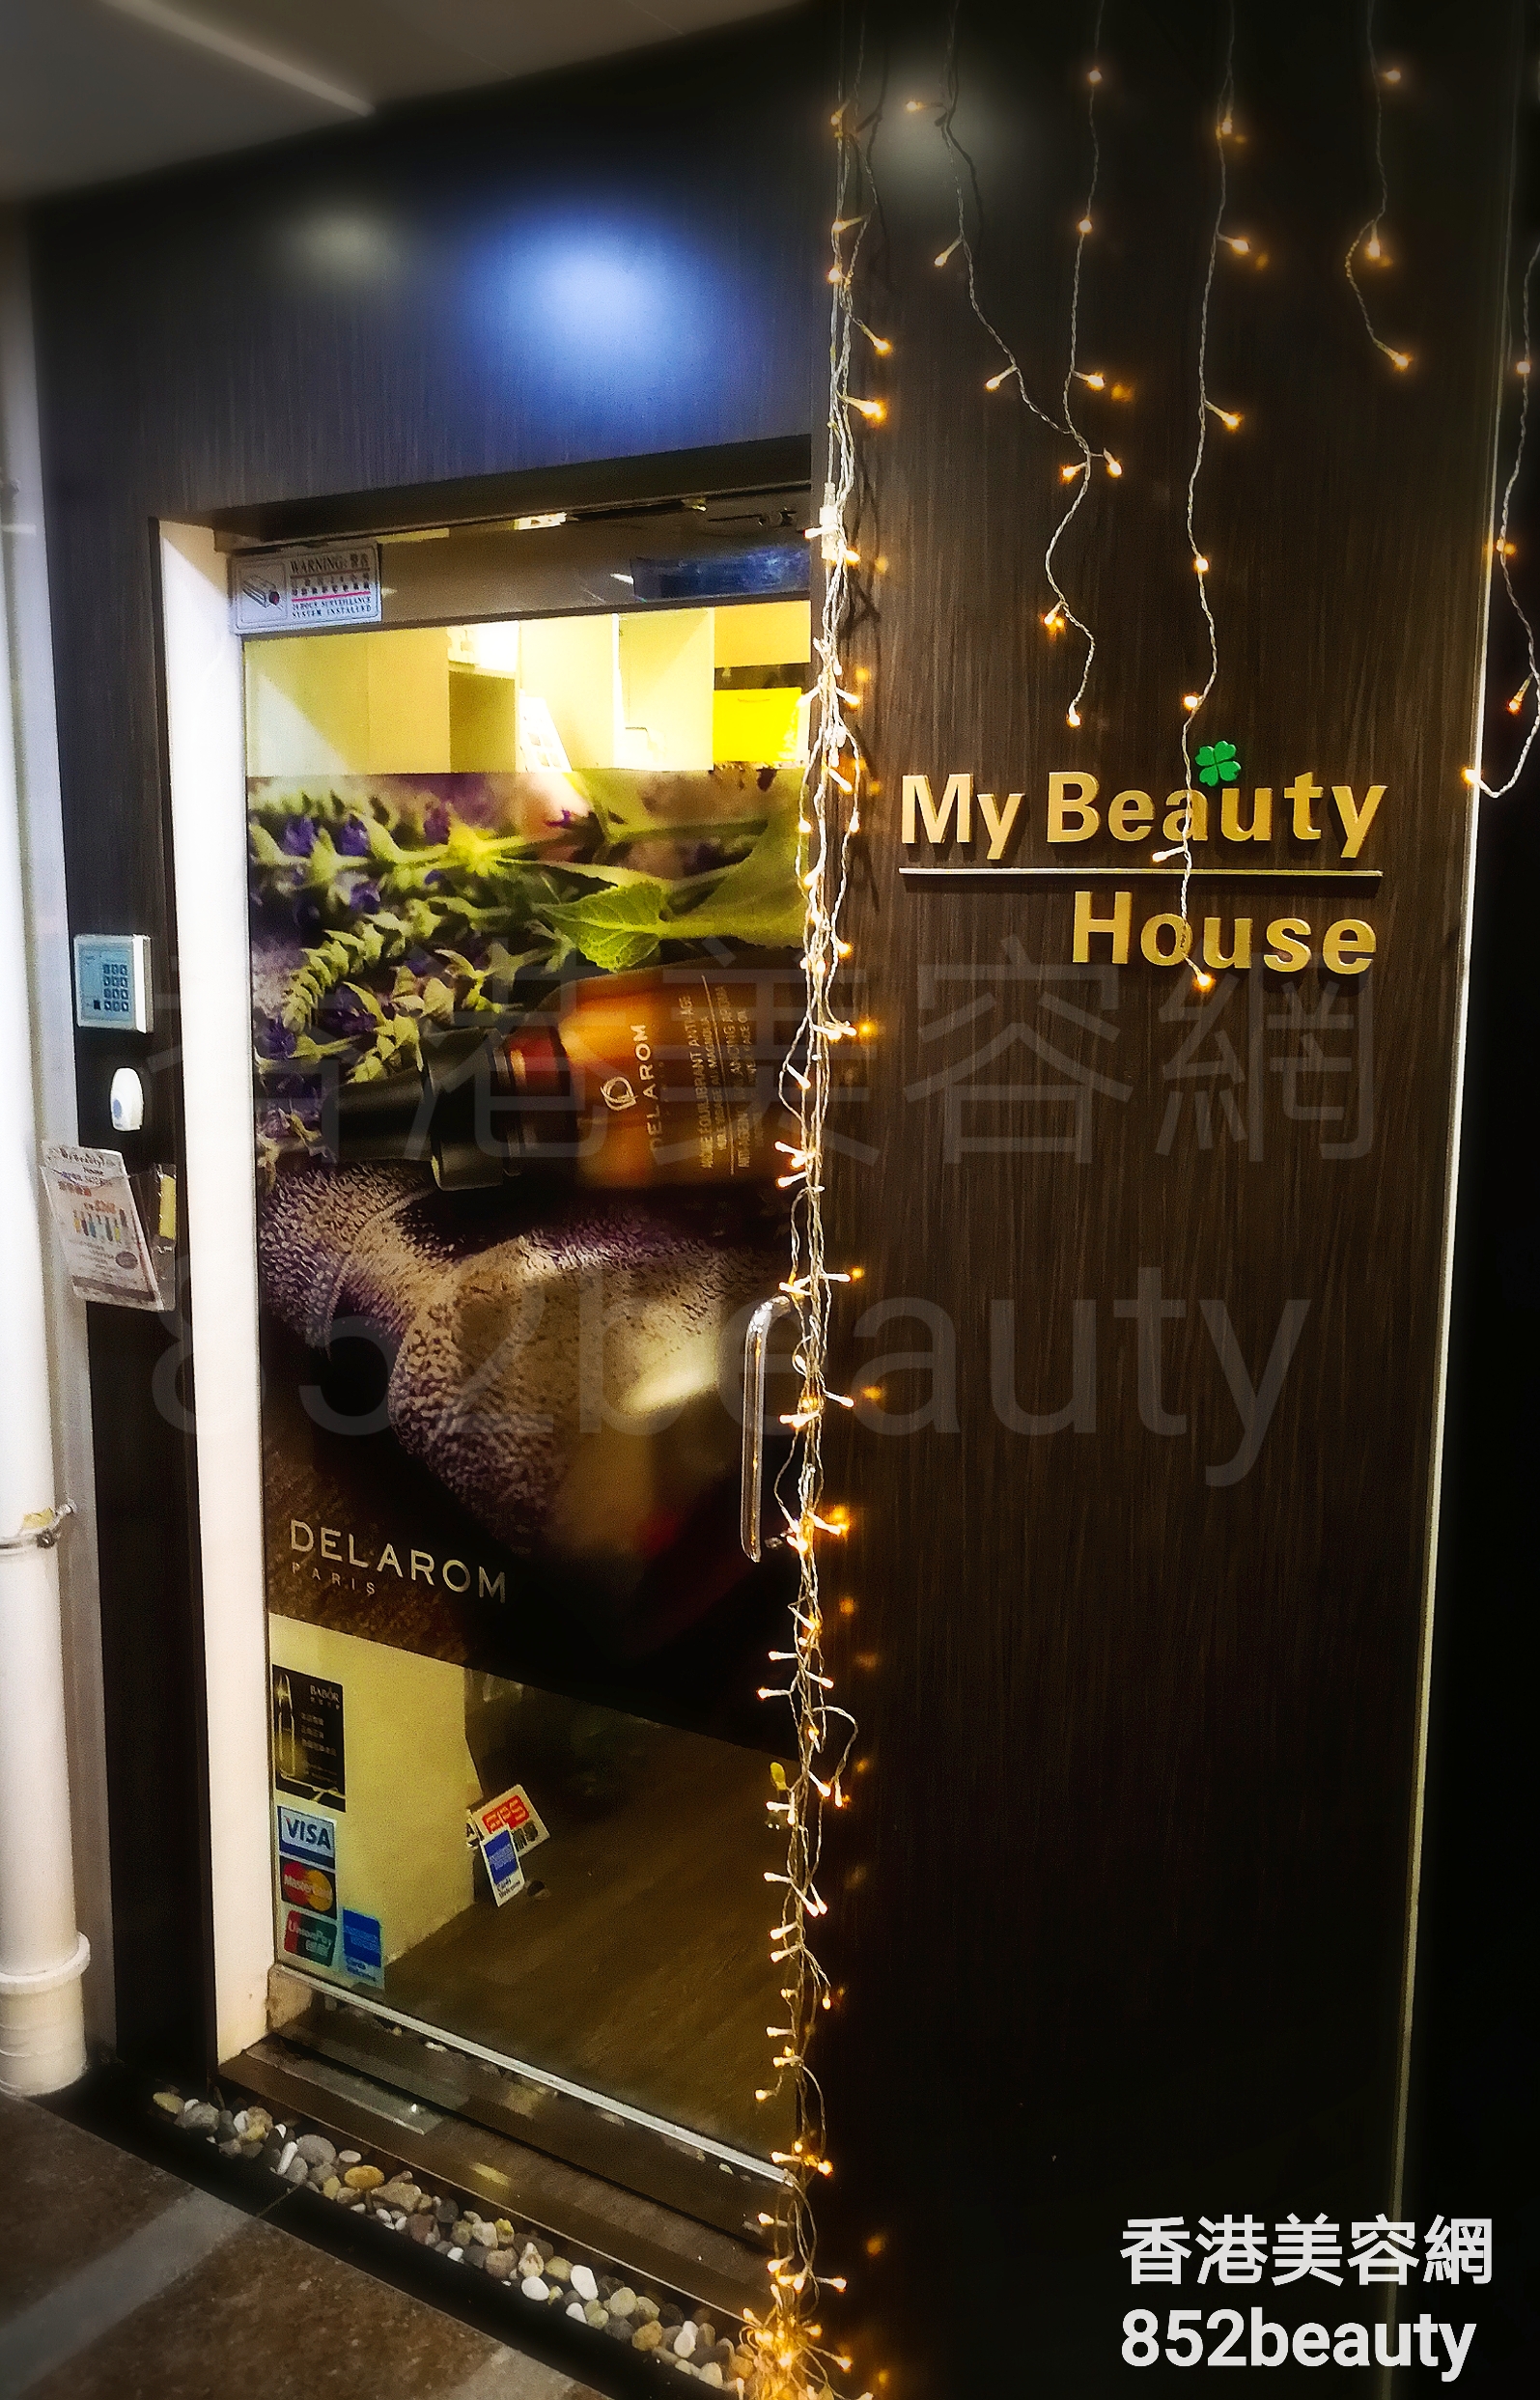 面部护理: My Beauty House